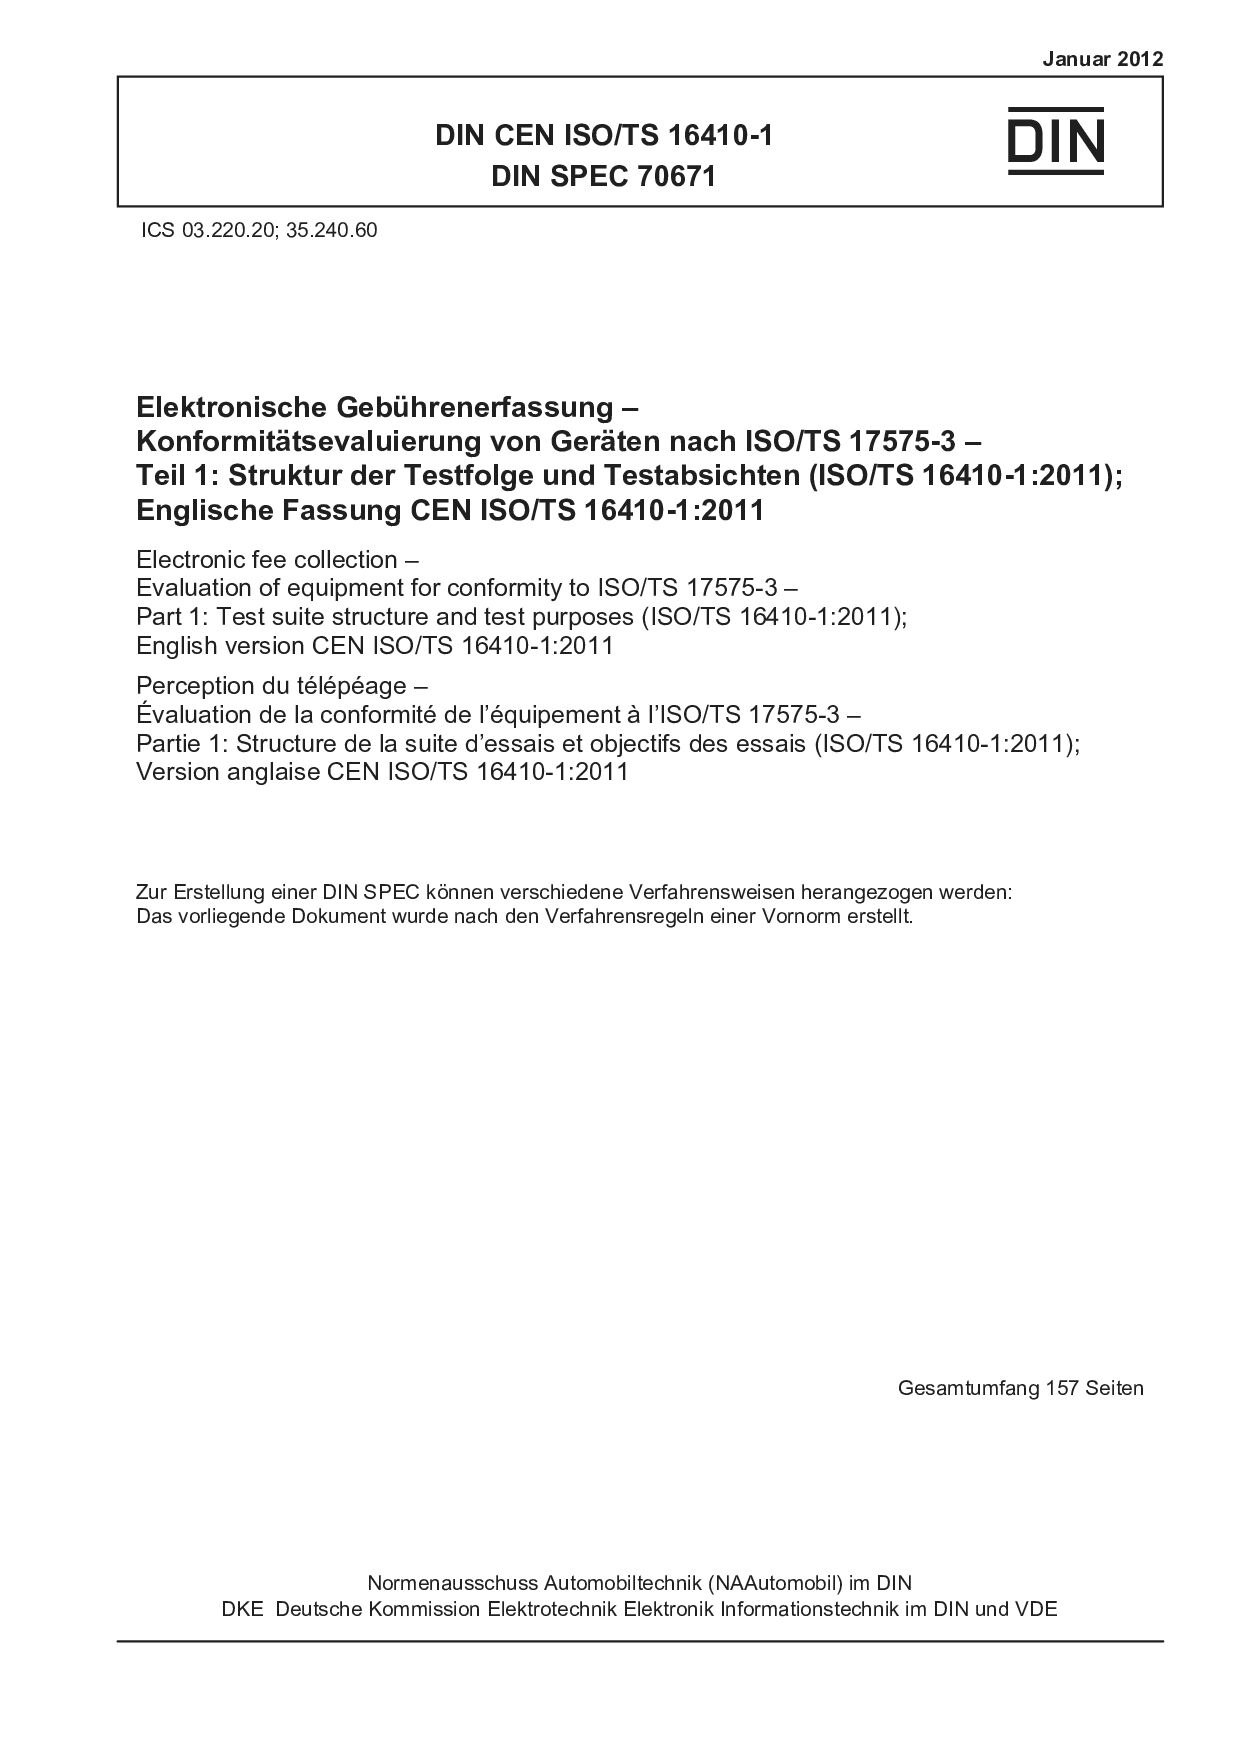 DIN CEN ISO/TS 16410-1:2012